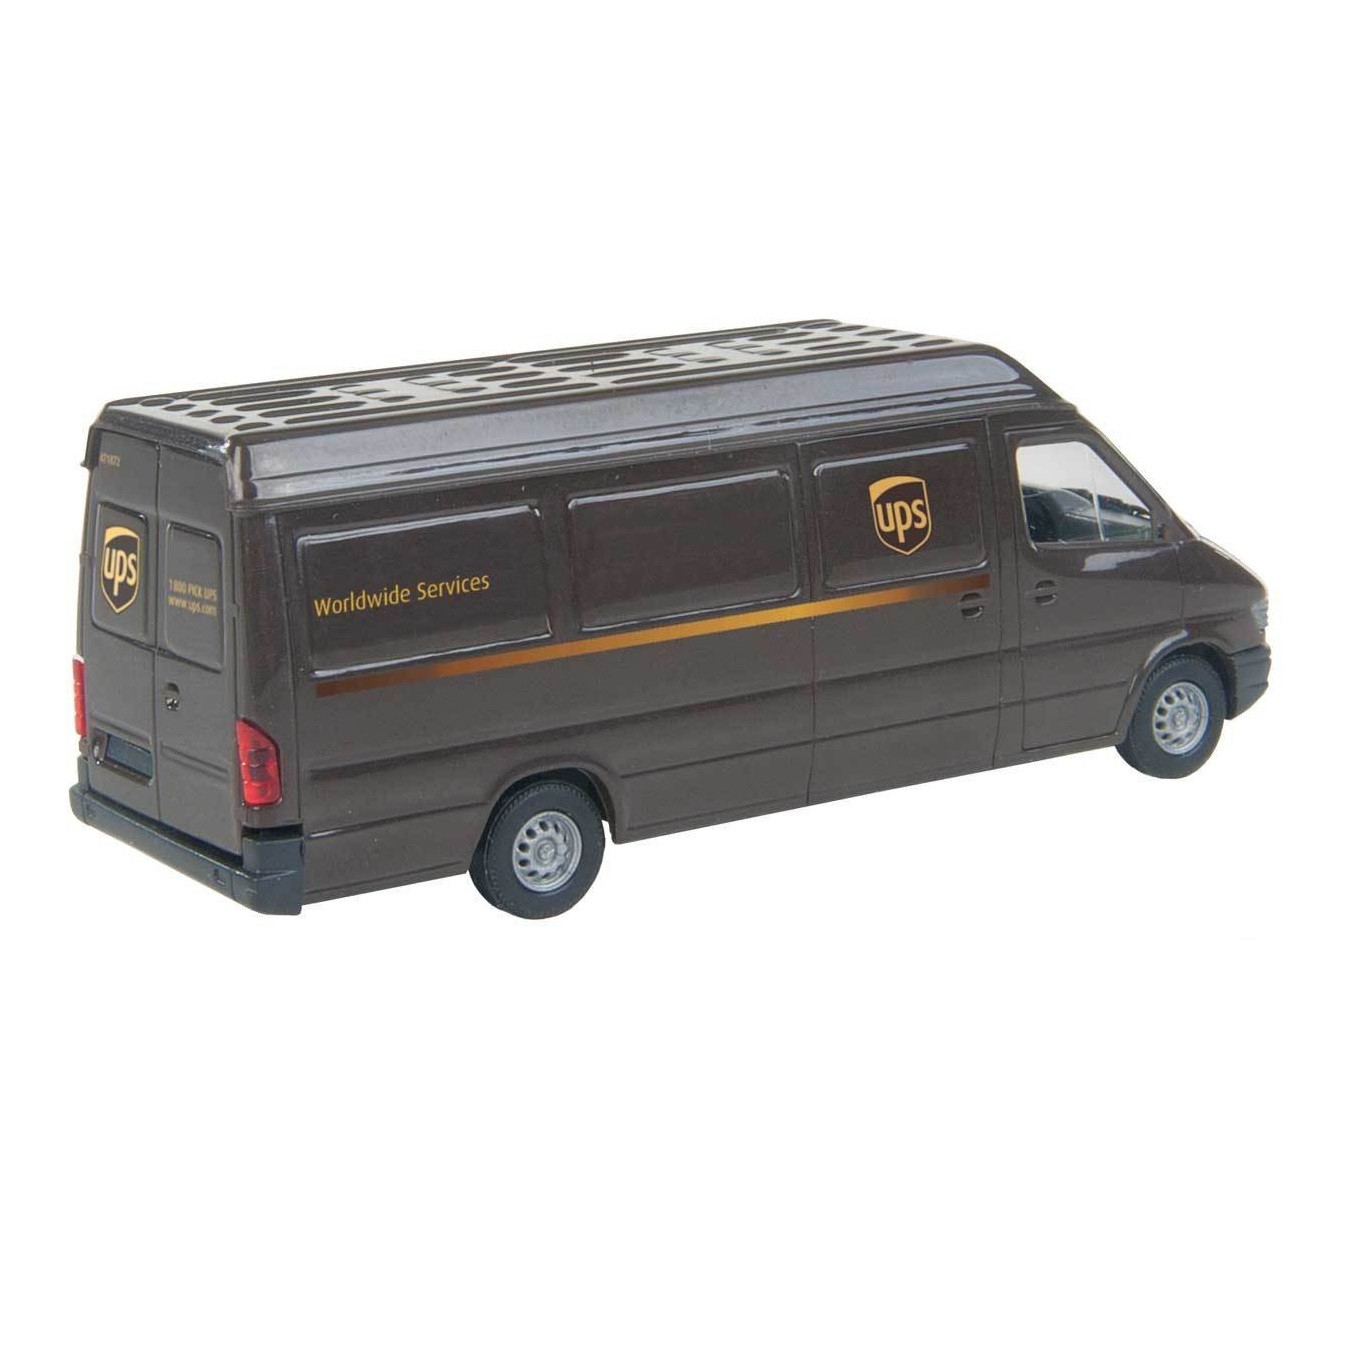 UPS® Delivery Van